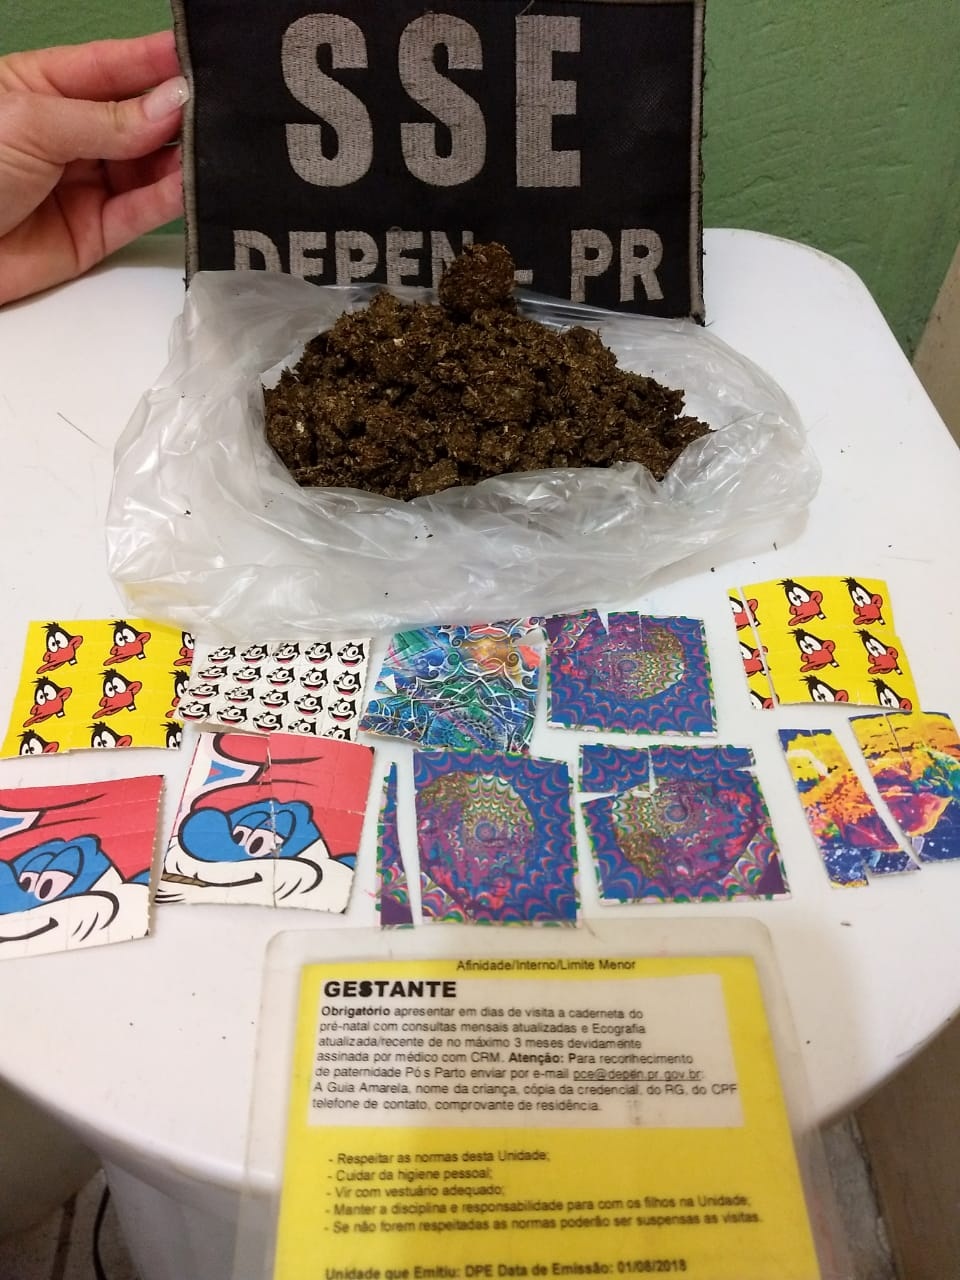 Entre as apreensões, estavam 100 gramas de maconha e 250 pontos de LSD. Foto: Divulgação/Depen-PR